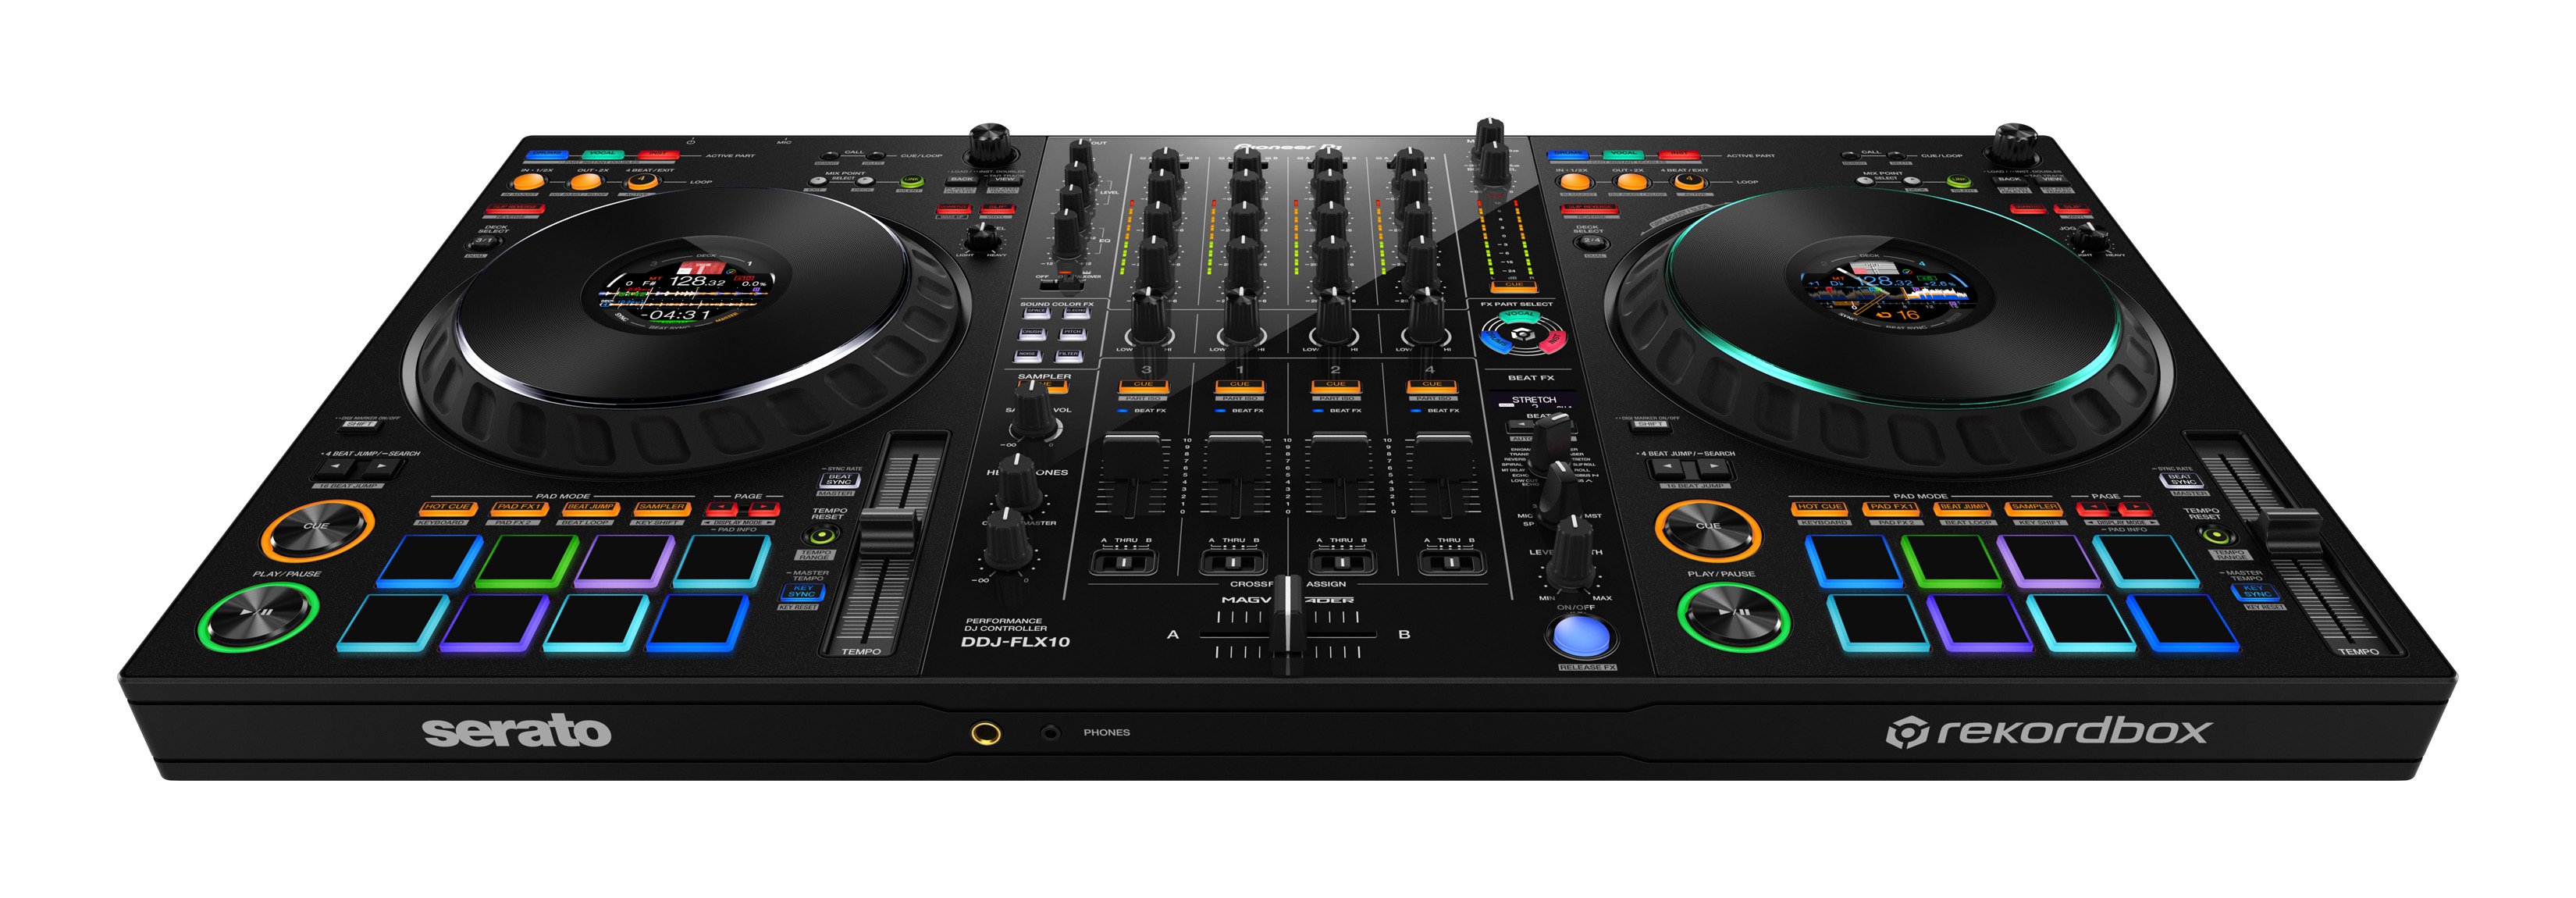 Afdaling proza micro Pioneer DJ DDJ-1000 Rekordbox DJ Controller - djkit®